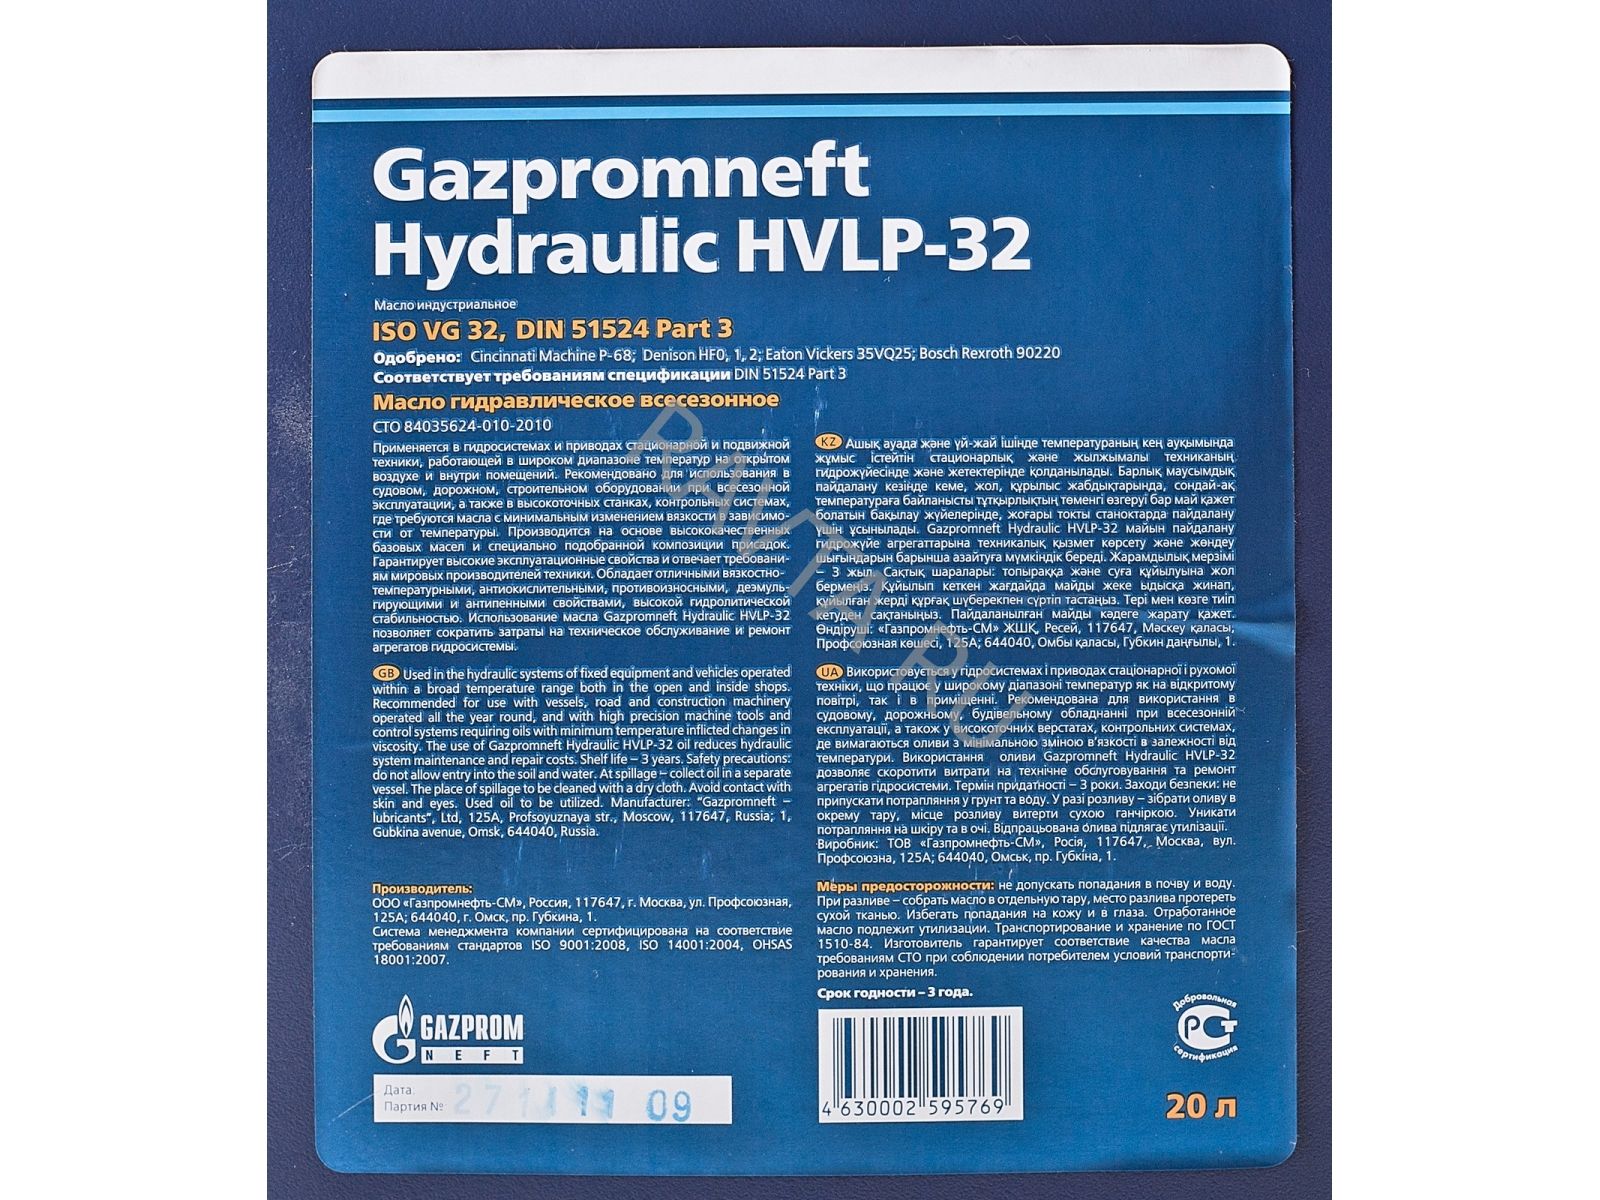 Масло гидравлическое gazpromneft hydraulic. Gazpromneft Hydraulic HVLP-32, 205л. Масло гидравлическое Gazpromneft Hydraulic HVLP-32. Gazpromneft Hydraulic HVLP-46 20л. Gazpromneft Hydraulic HLP 32 20л.